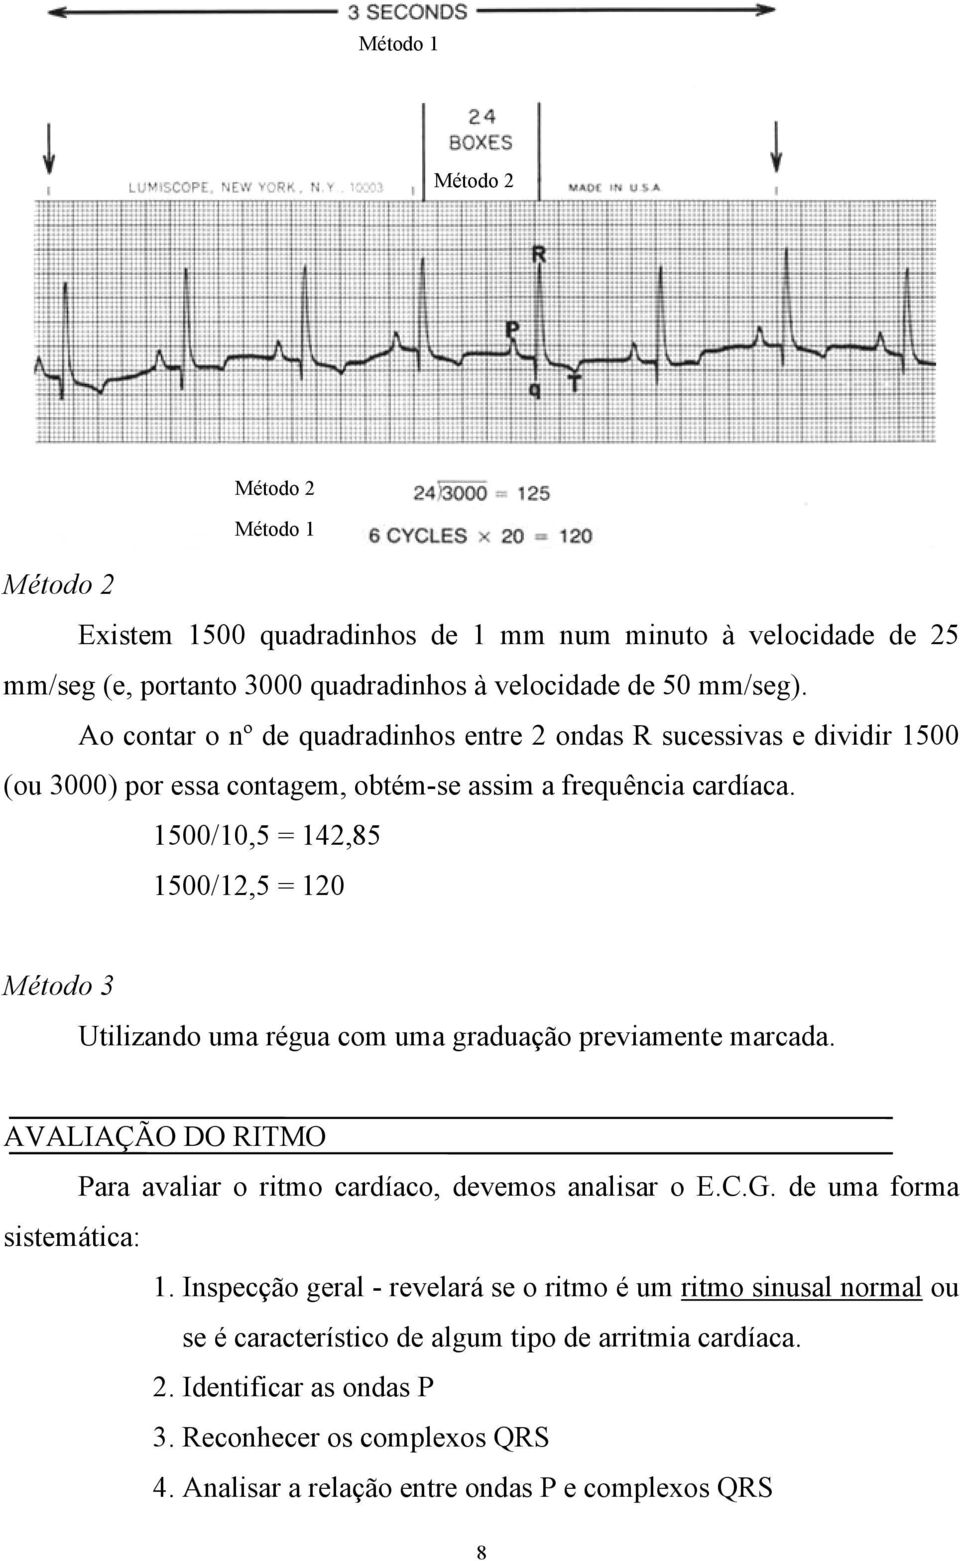 1500/10,5 = 142,85 1500/12,5 = 120 Método 3 Utilizando uma régua com uma graduação previamente marcada. AVALIAÇÃO DO RITMO Para avaliar o ritmo cardíaco, devemos analisar o E.C.G.